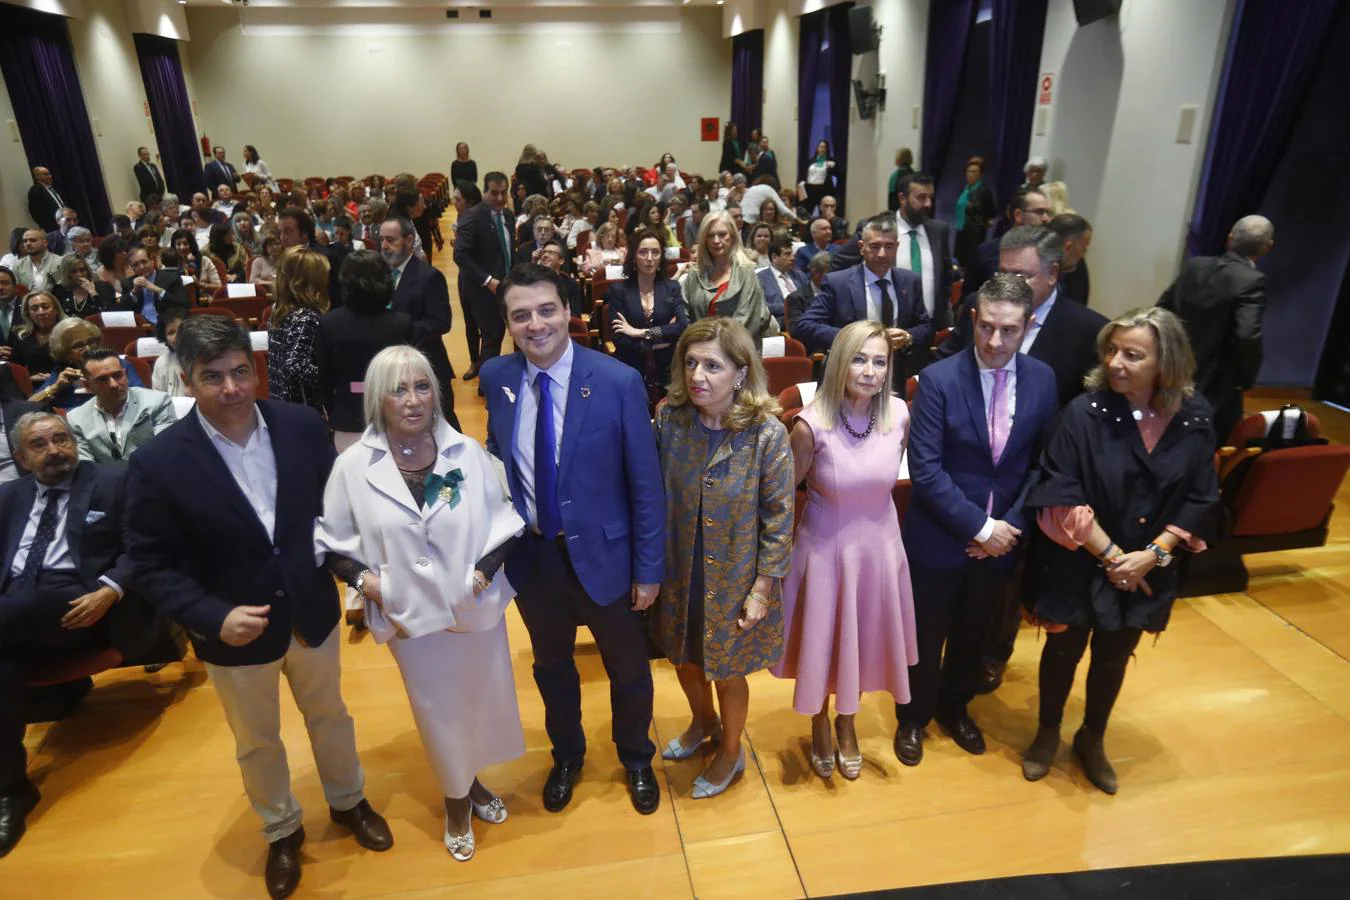 La Asociación contra el Cáncer celebra su 25 aniversario en Córdoba, en imágenes